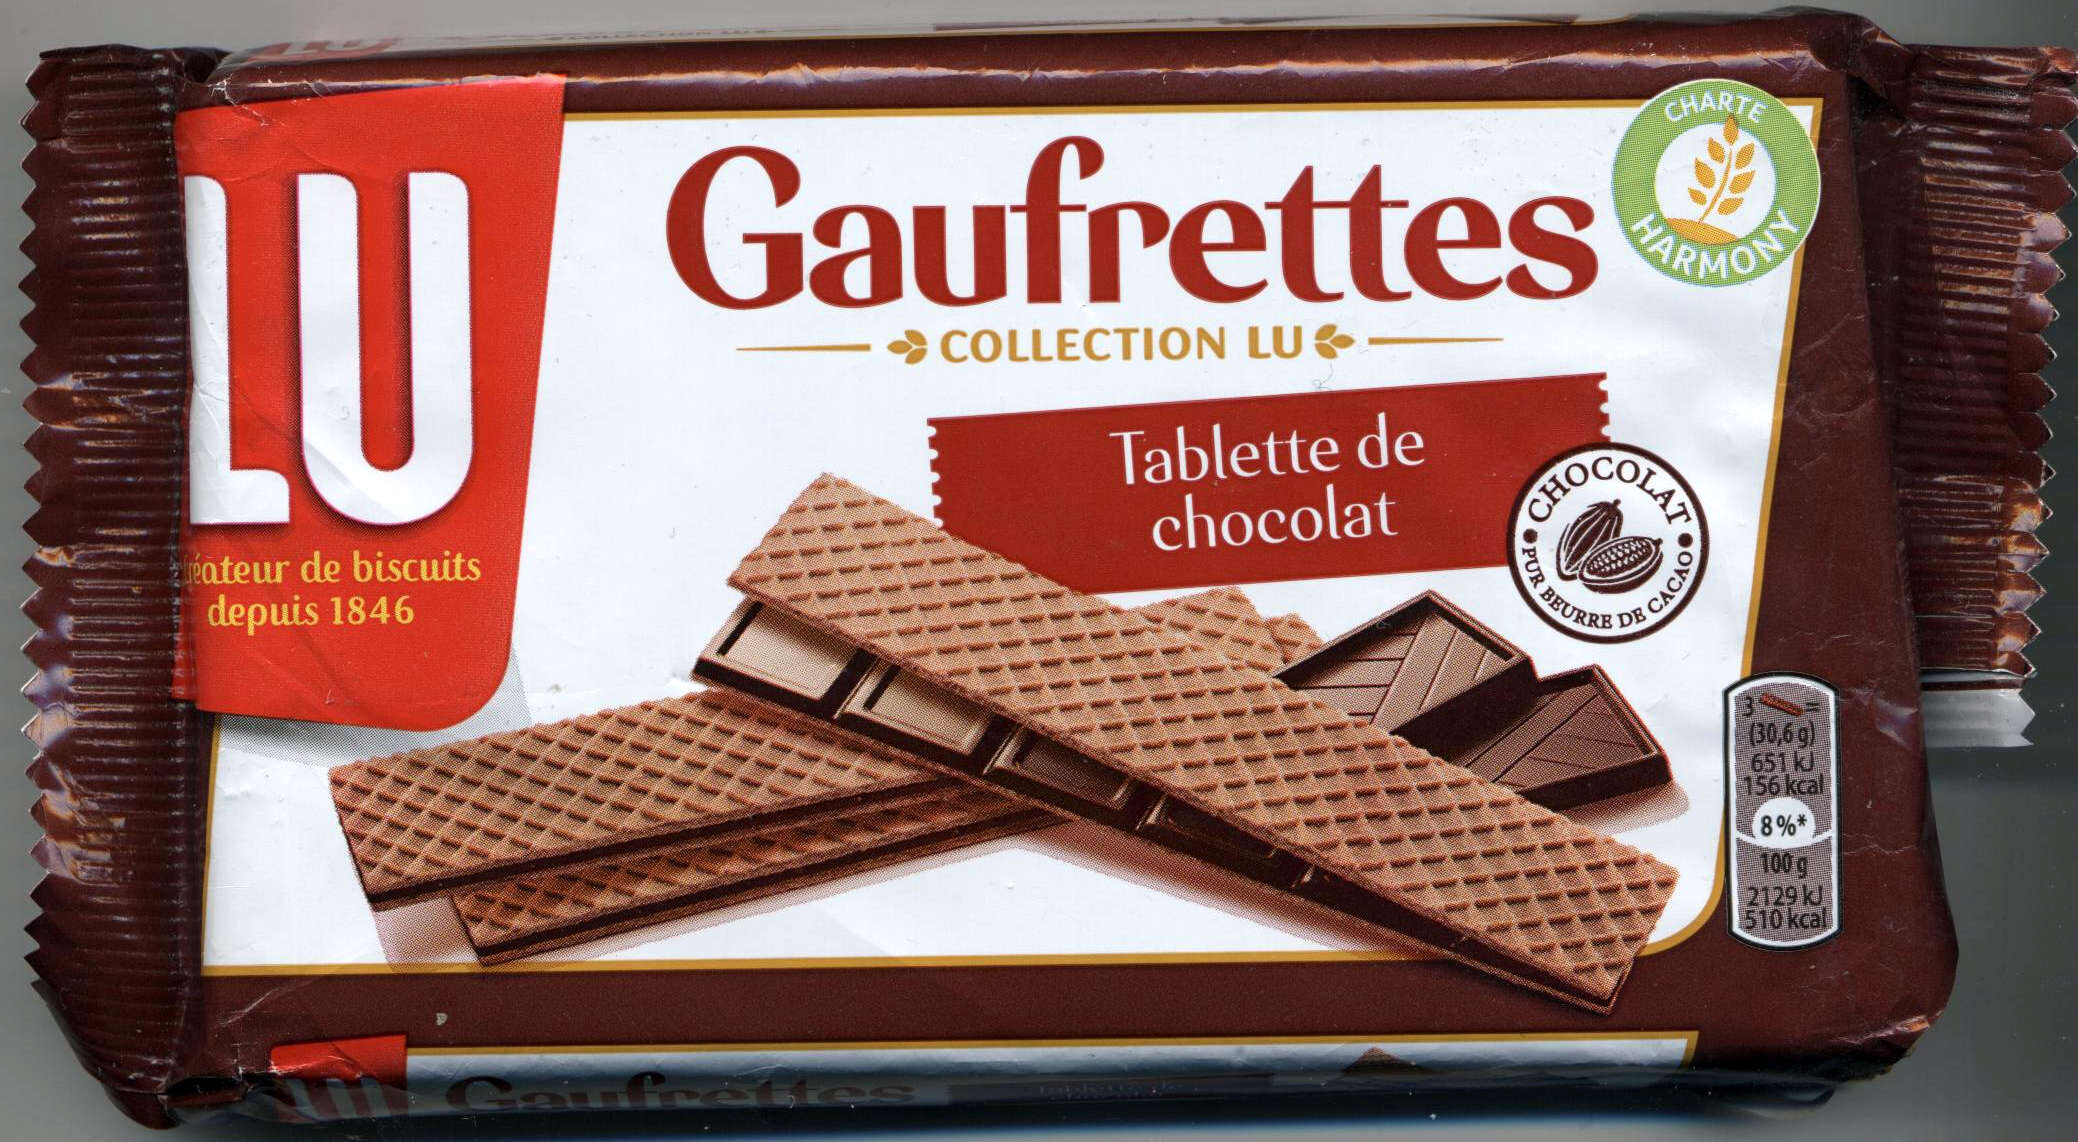 Gaufrettes - Tablette de chocolat - Produit